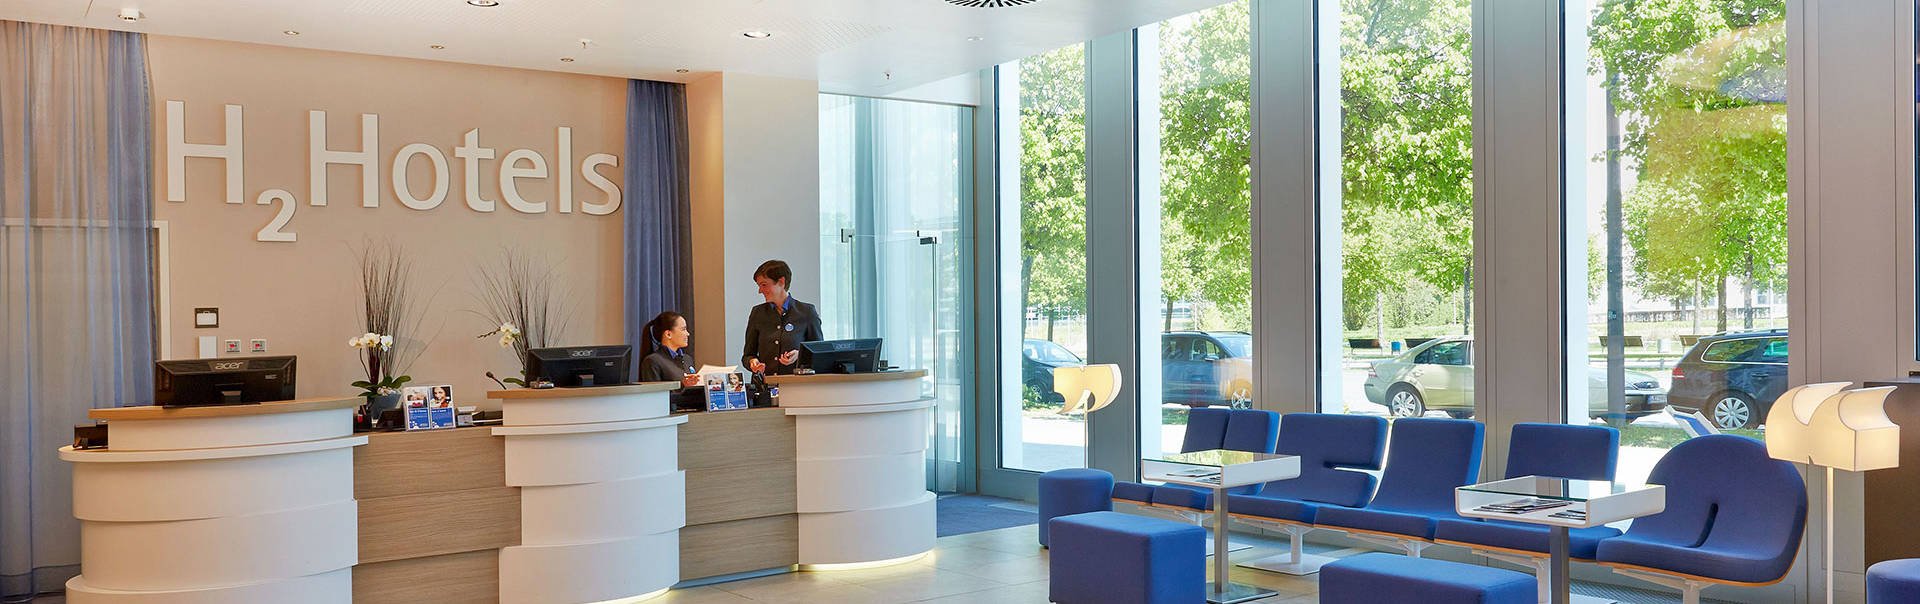 Отели с инновационным дизайном в крупных городах Европы - H2 Hotels